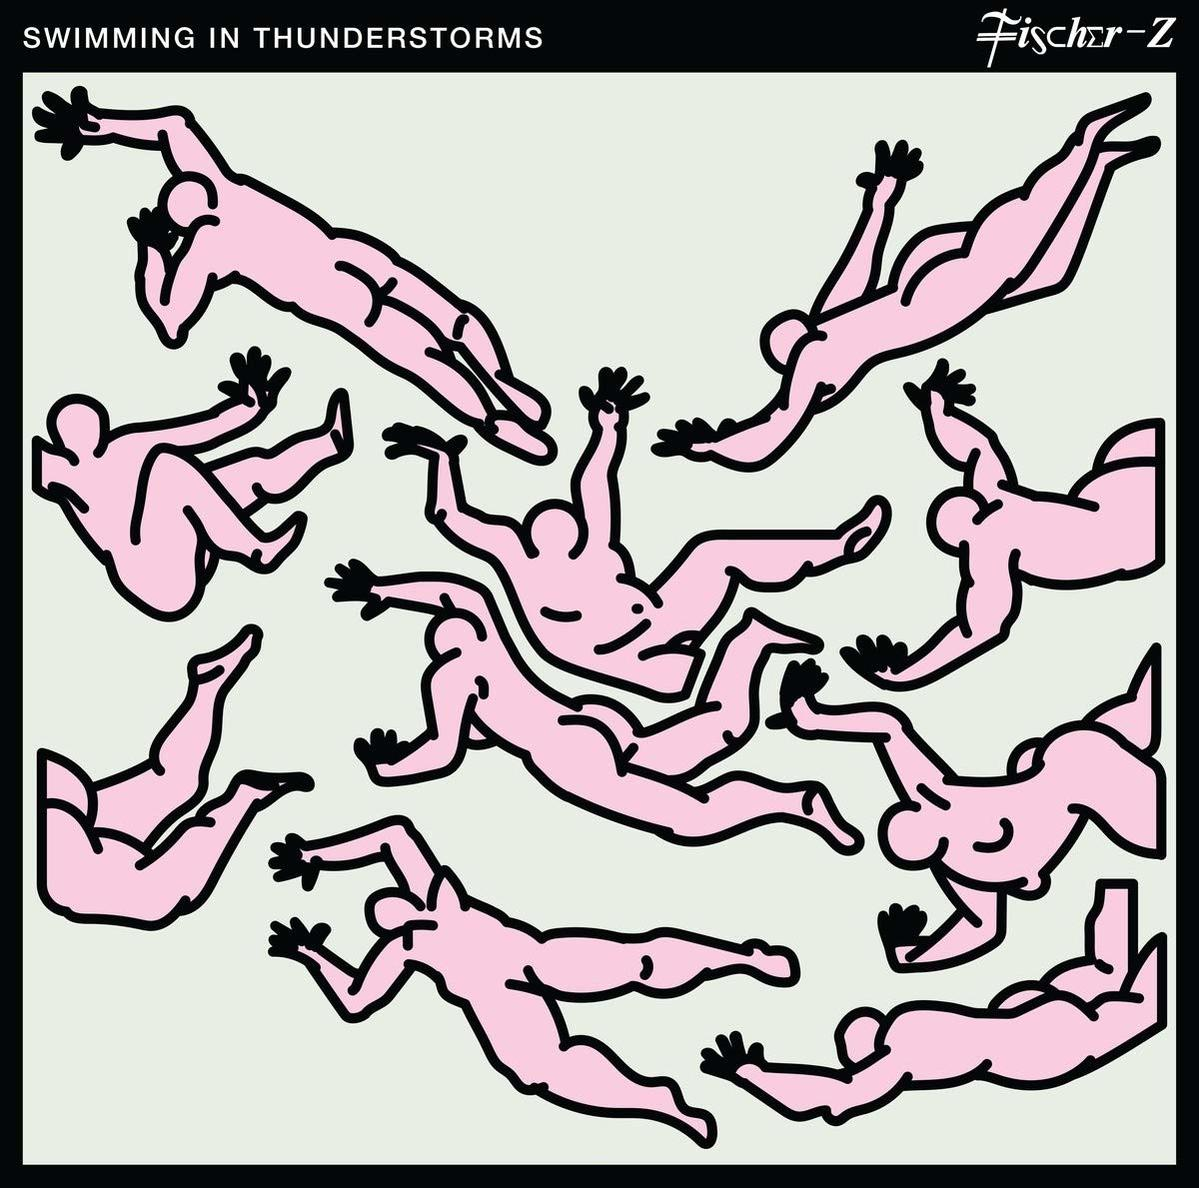 (Vinyl) Z Fischer - - Thunderstorms In Swimming